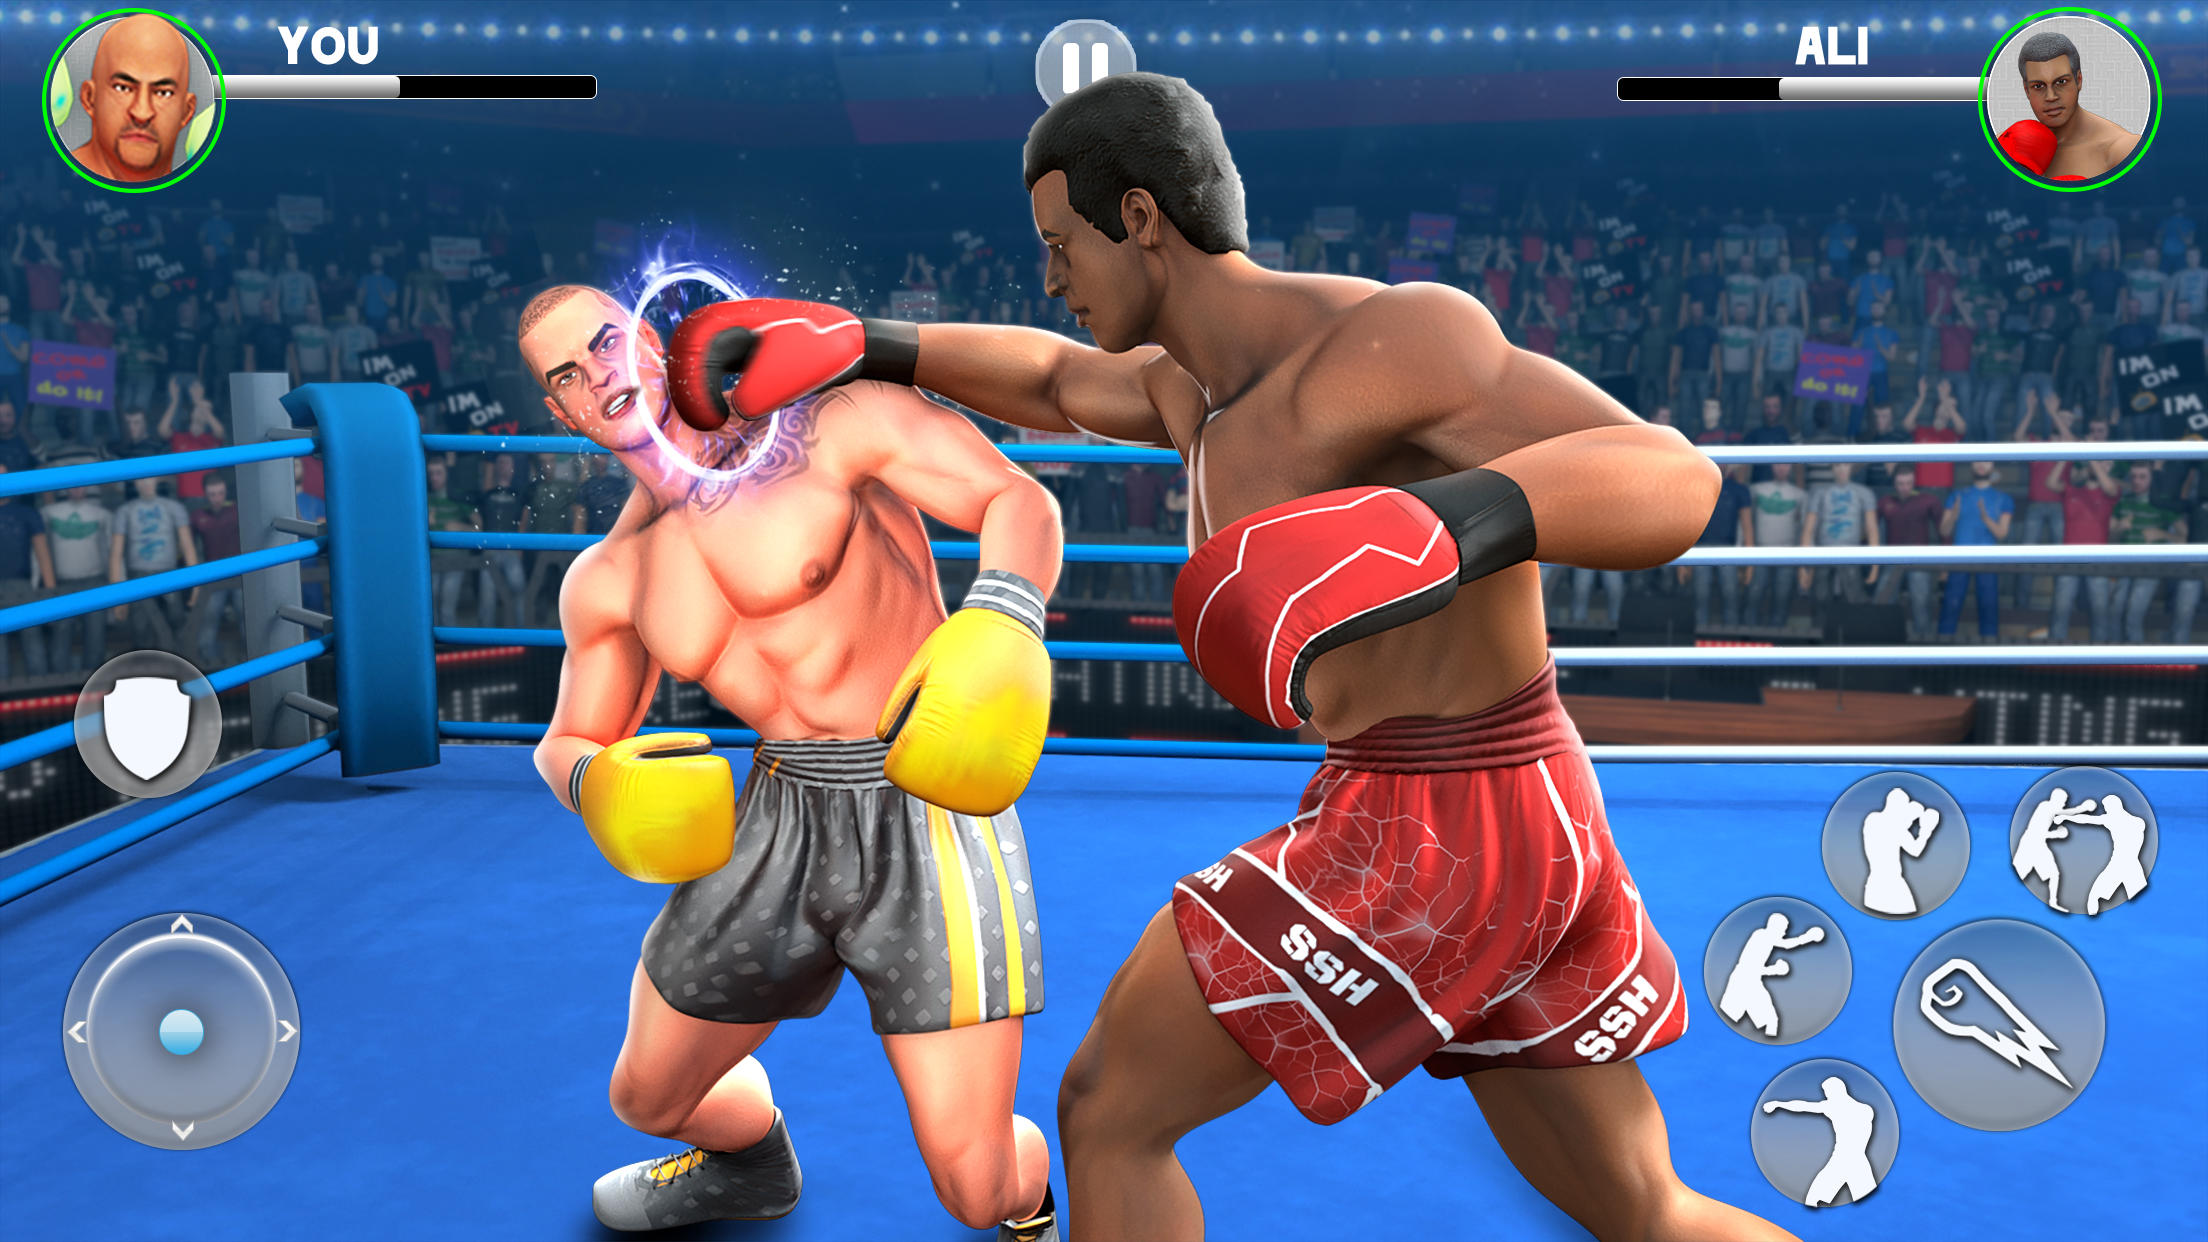 Screenshot 1 of Kick Boxing Games- တိုက်ပွဲဂိမ်း 2.4.6